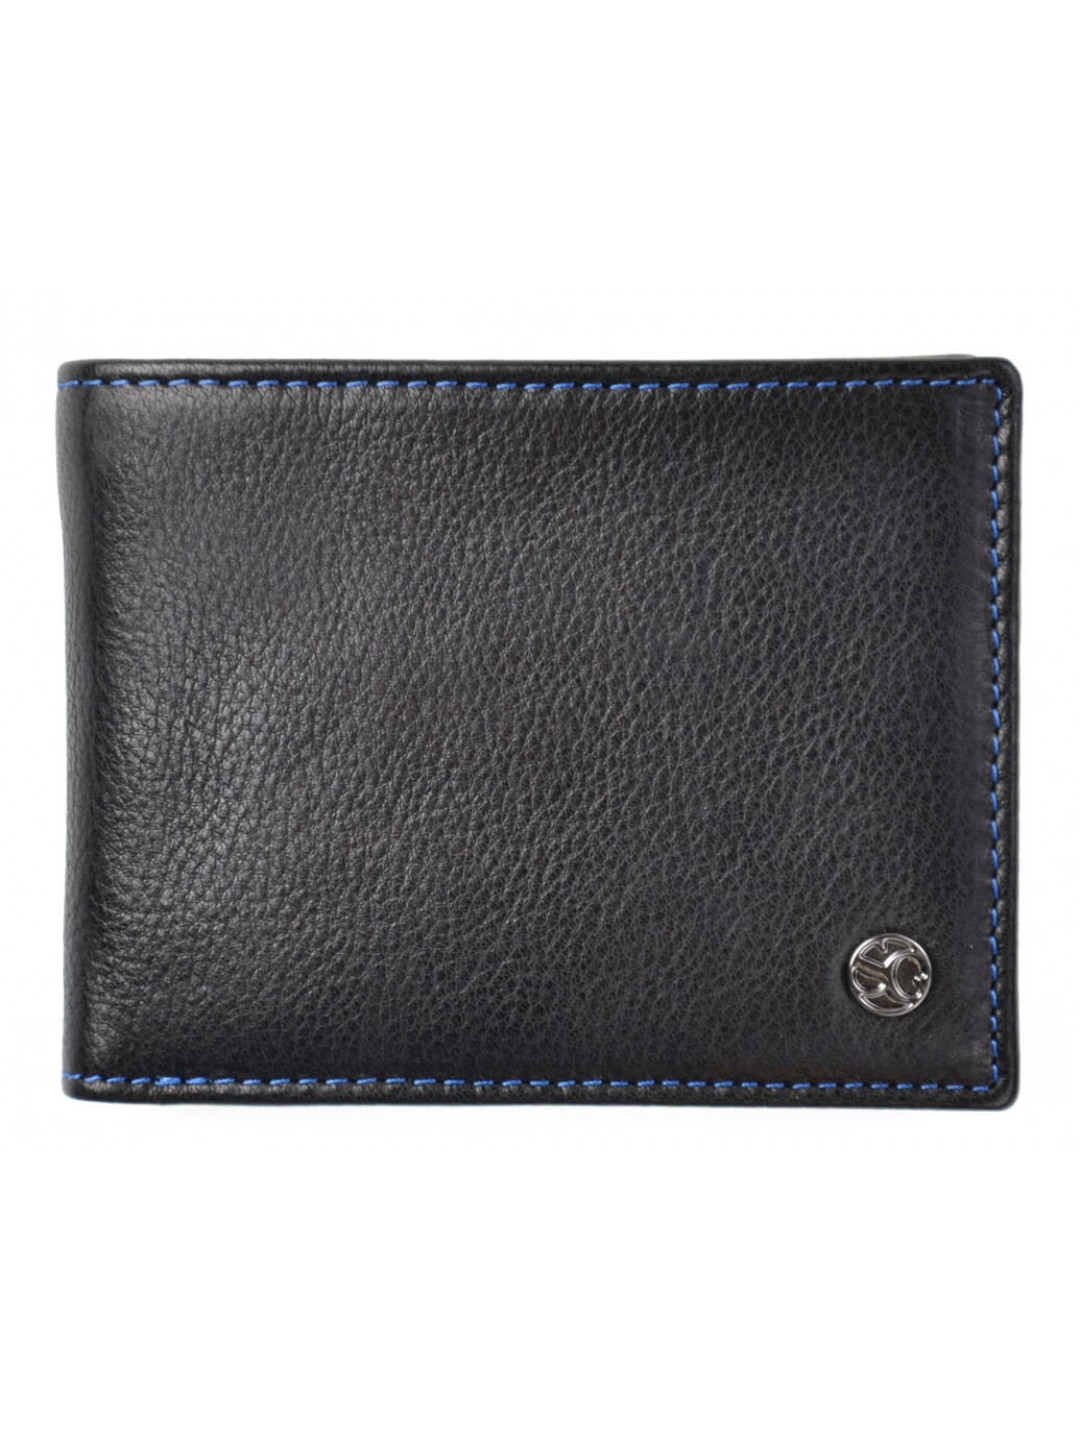 SEGALI Pánská kožená peněženka 907 114 026 black blue